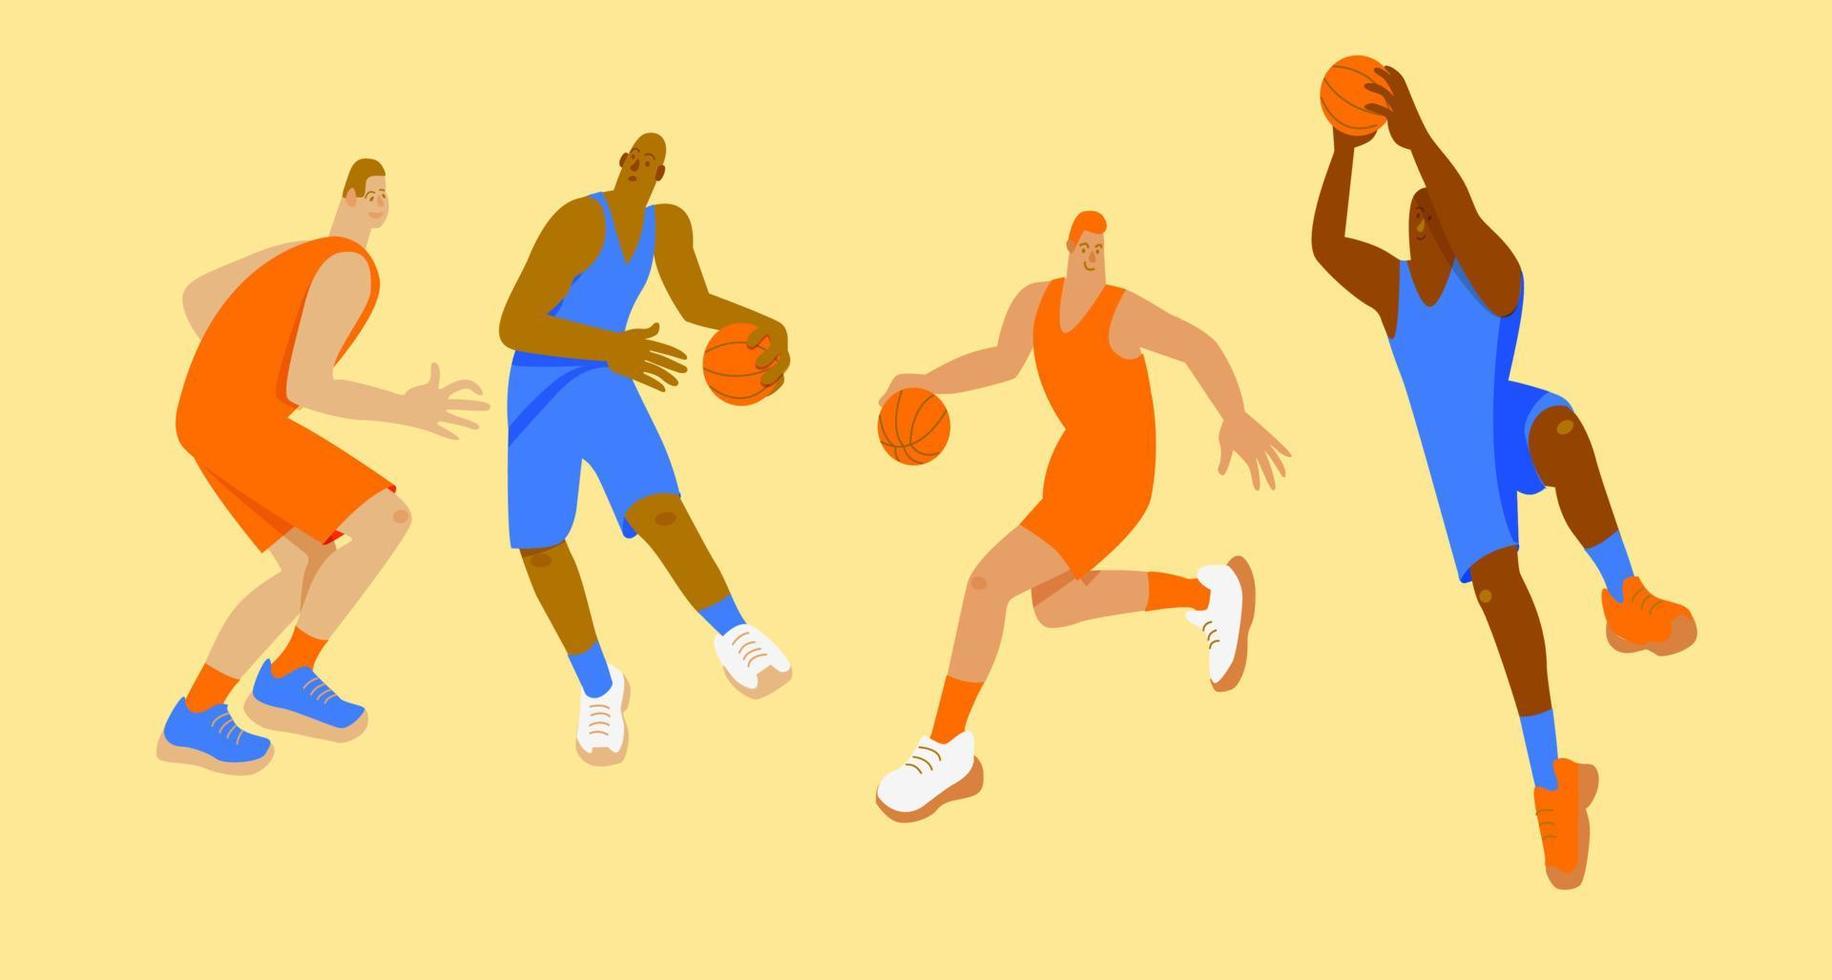 basketbal spelers in oranje en blauw uniformen in verschillend poseert. reeks vector